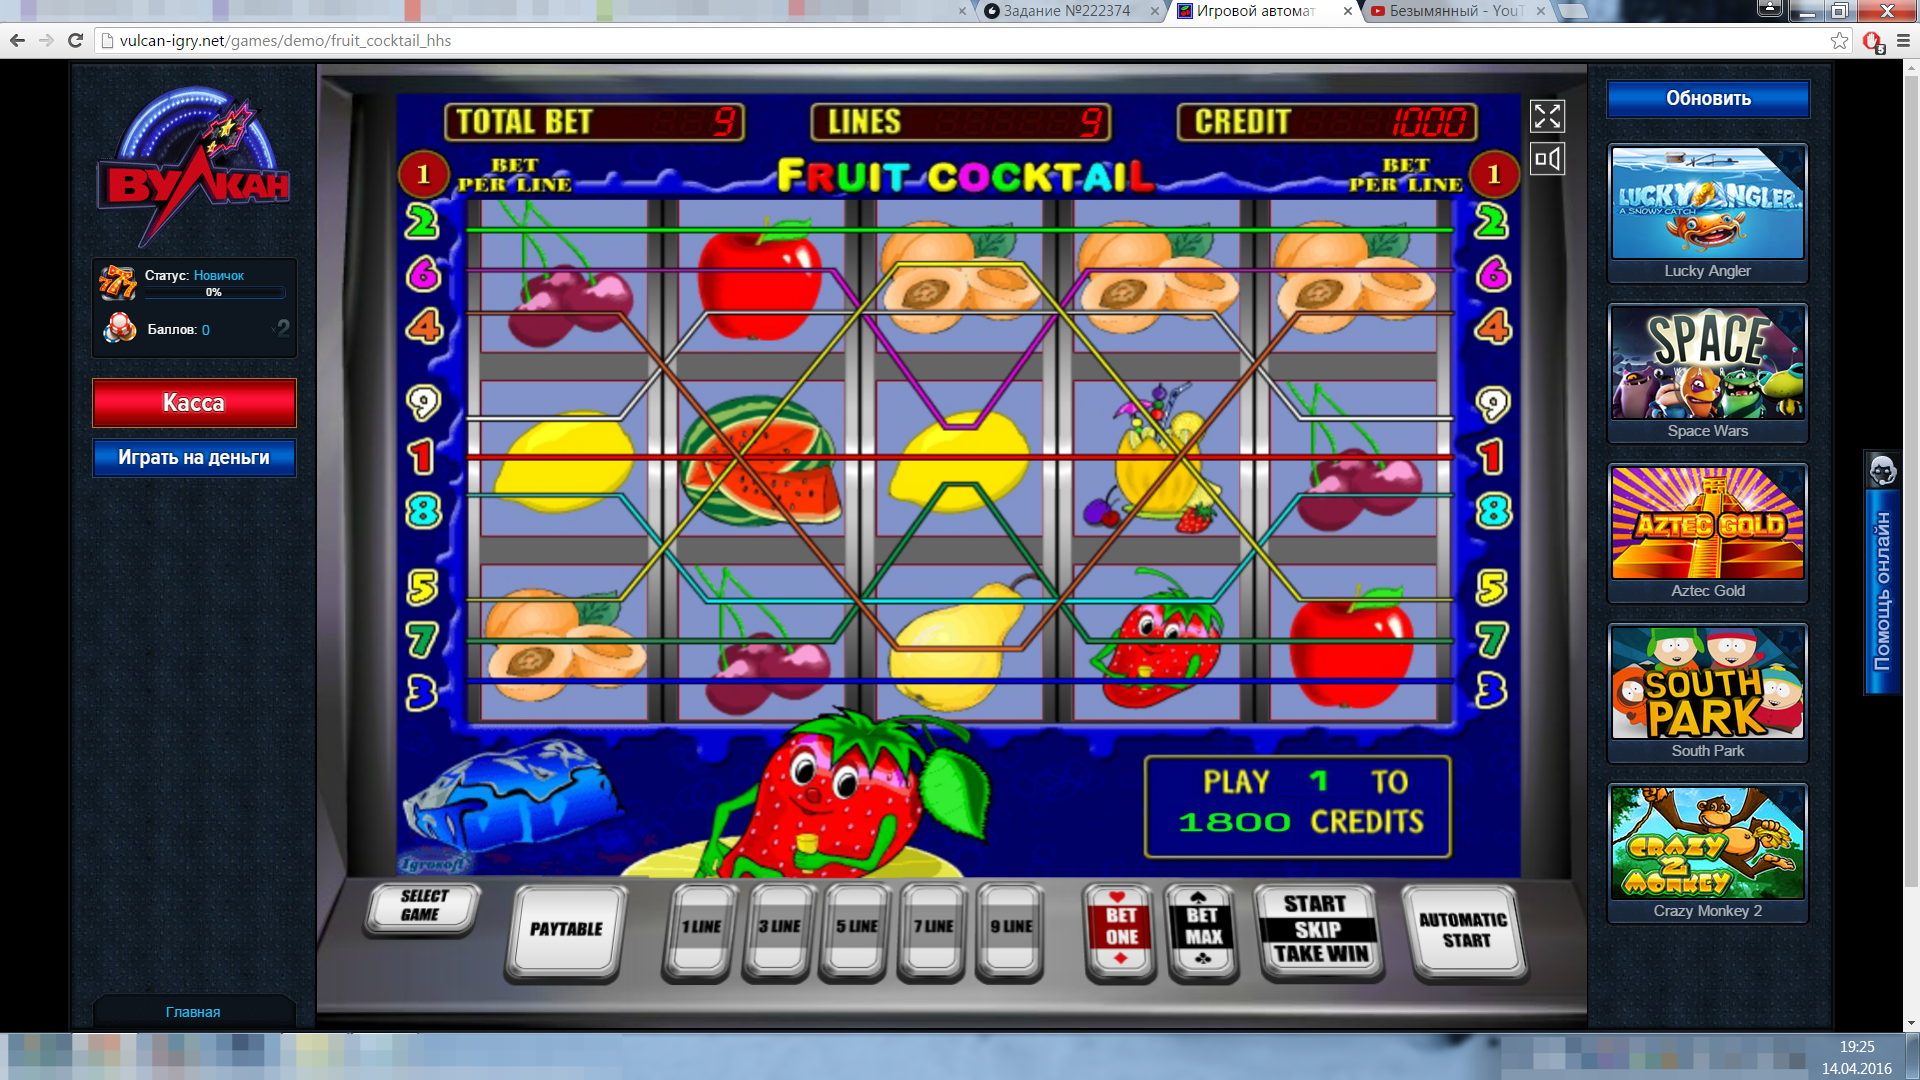 Скачать игры игровые автоматы эмуляторы бесплатно играть грузинское казино аджара онлайн